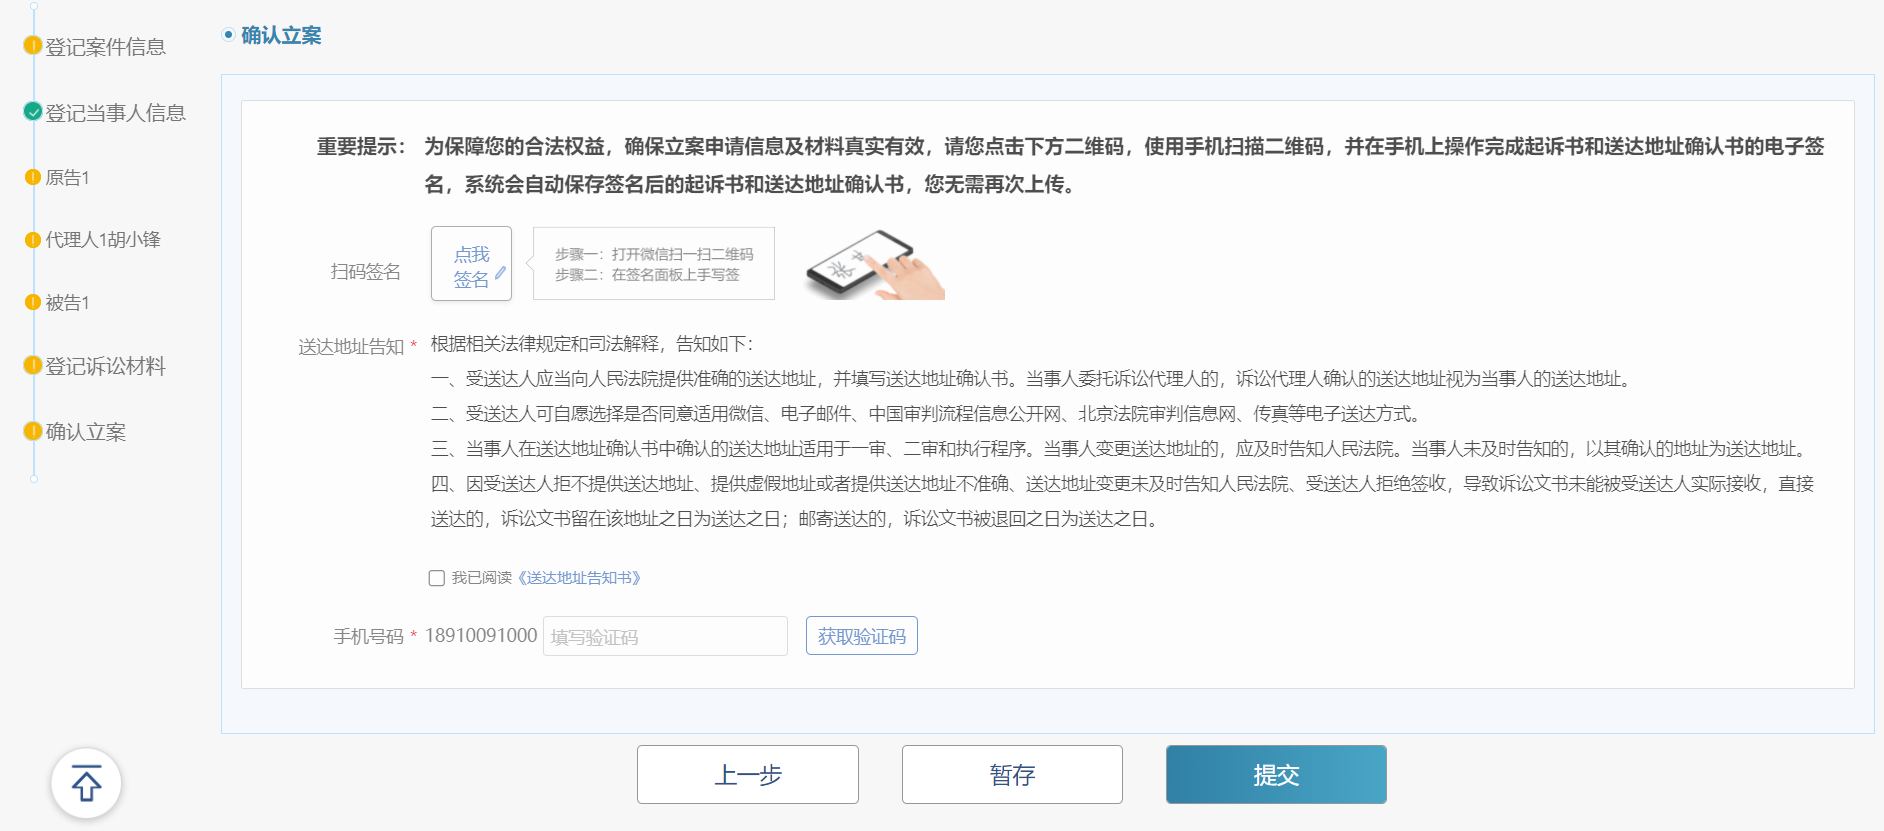 北京法院电子诉讼服务平台